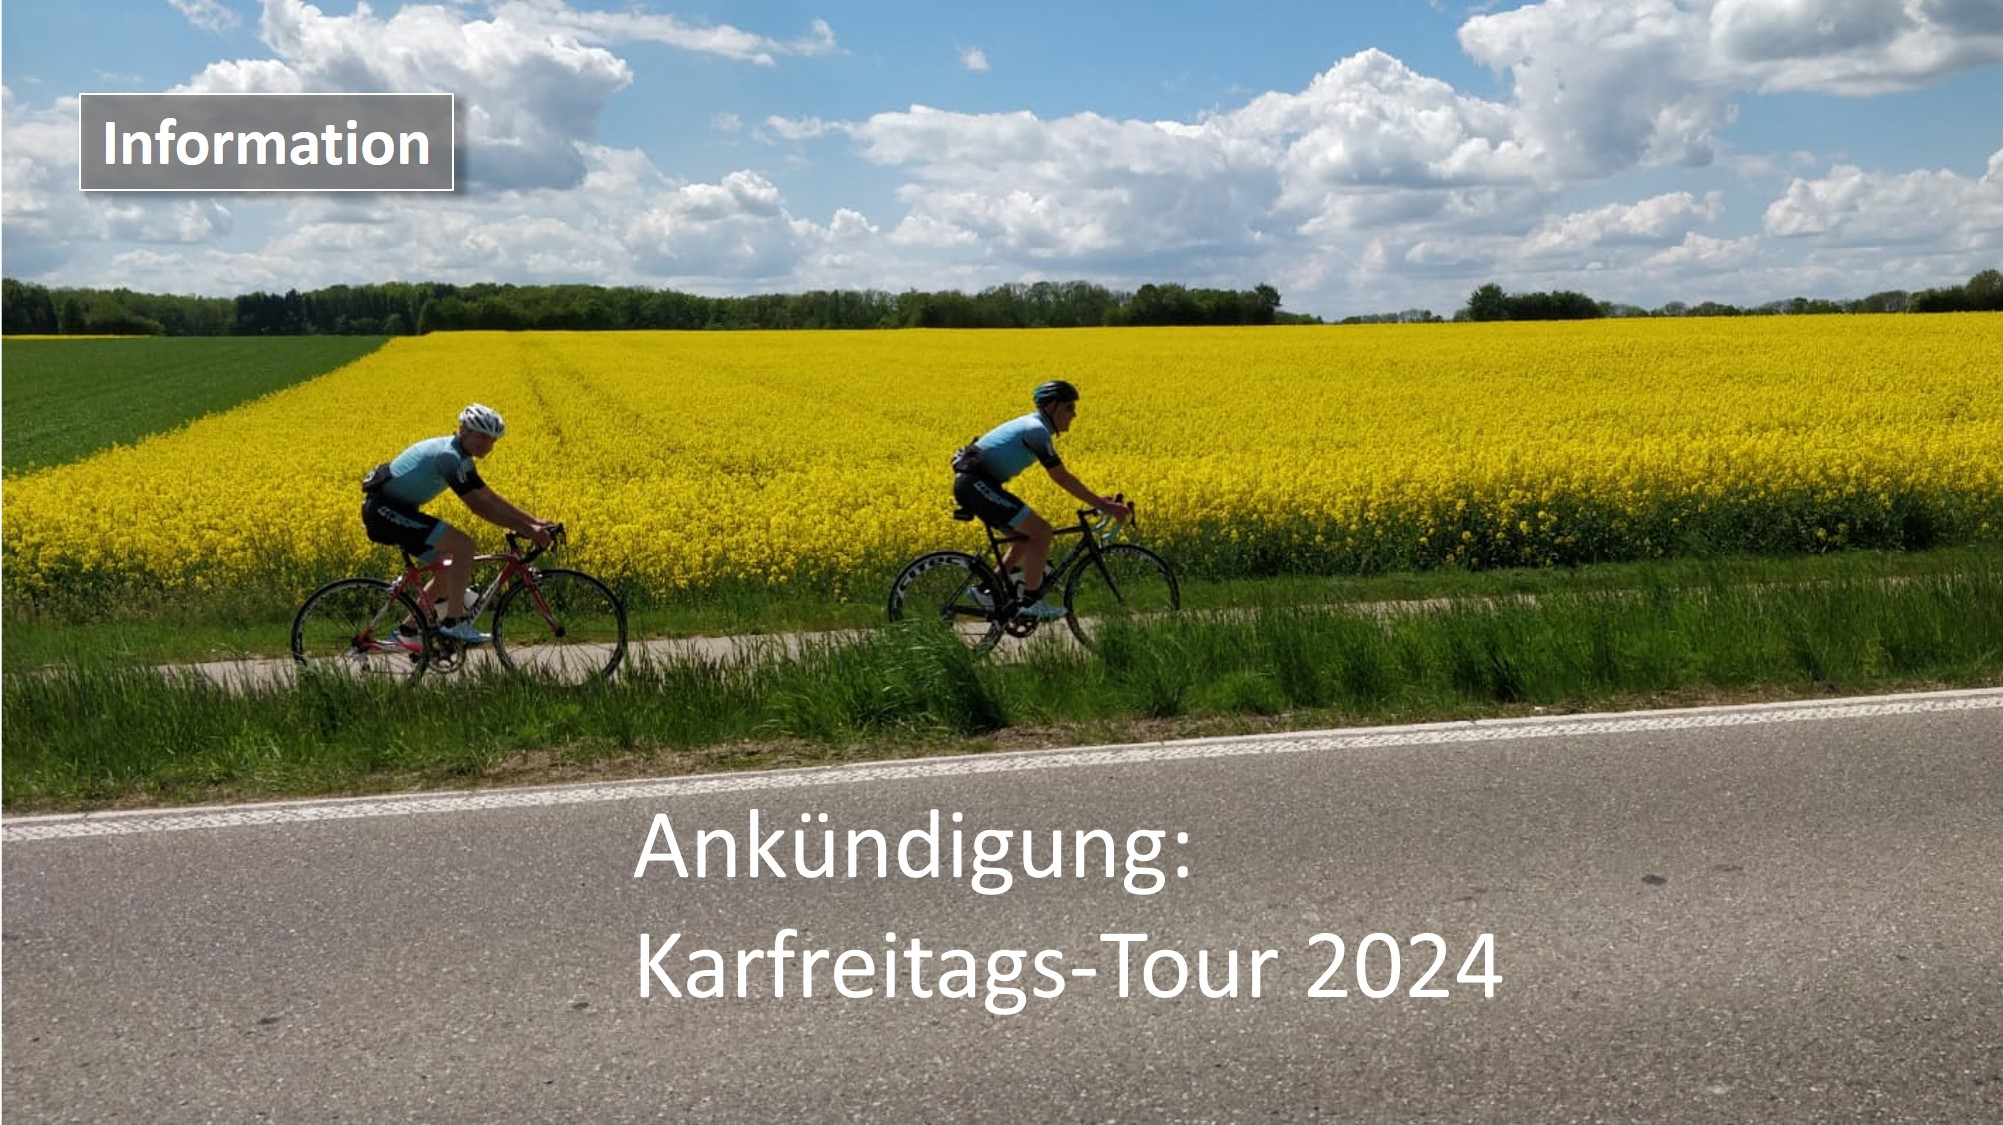 Karfreitags-Tour 2024